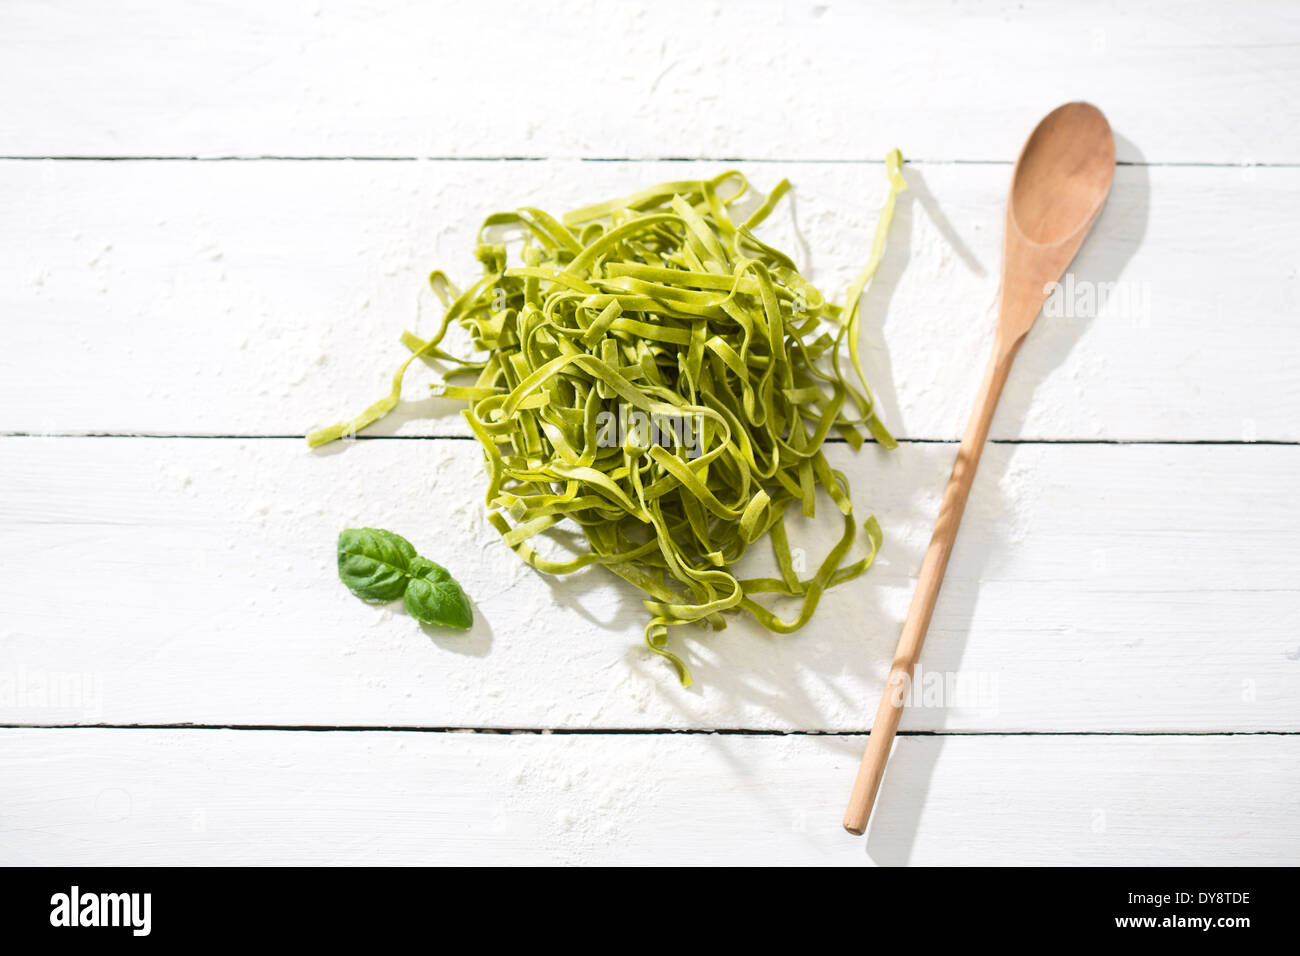 Tagliatelle fresche, spinaci foglie di basilico, il cucchiaio di legno e farina bianca sul tavolo di legno Foto Stock